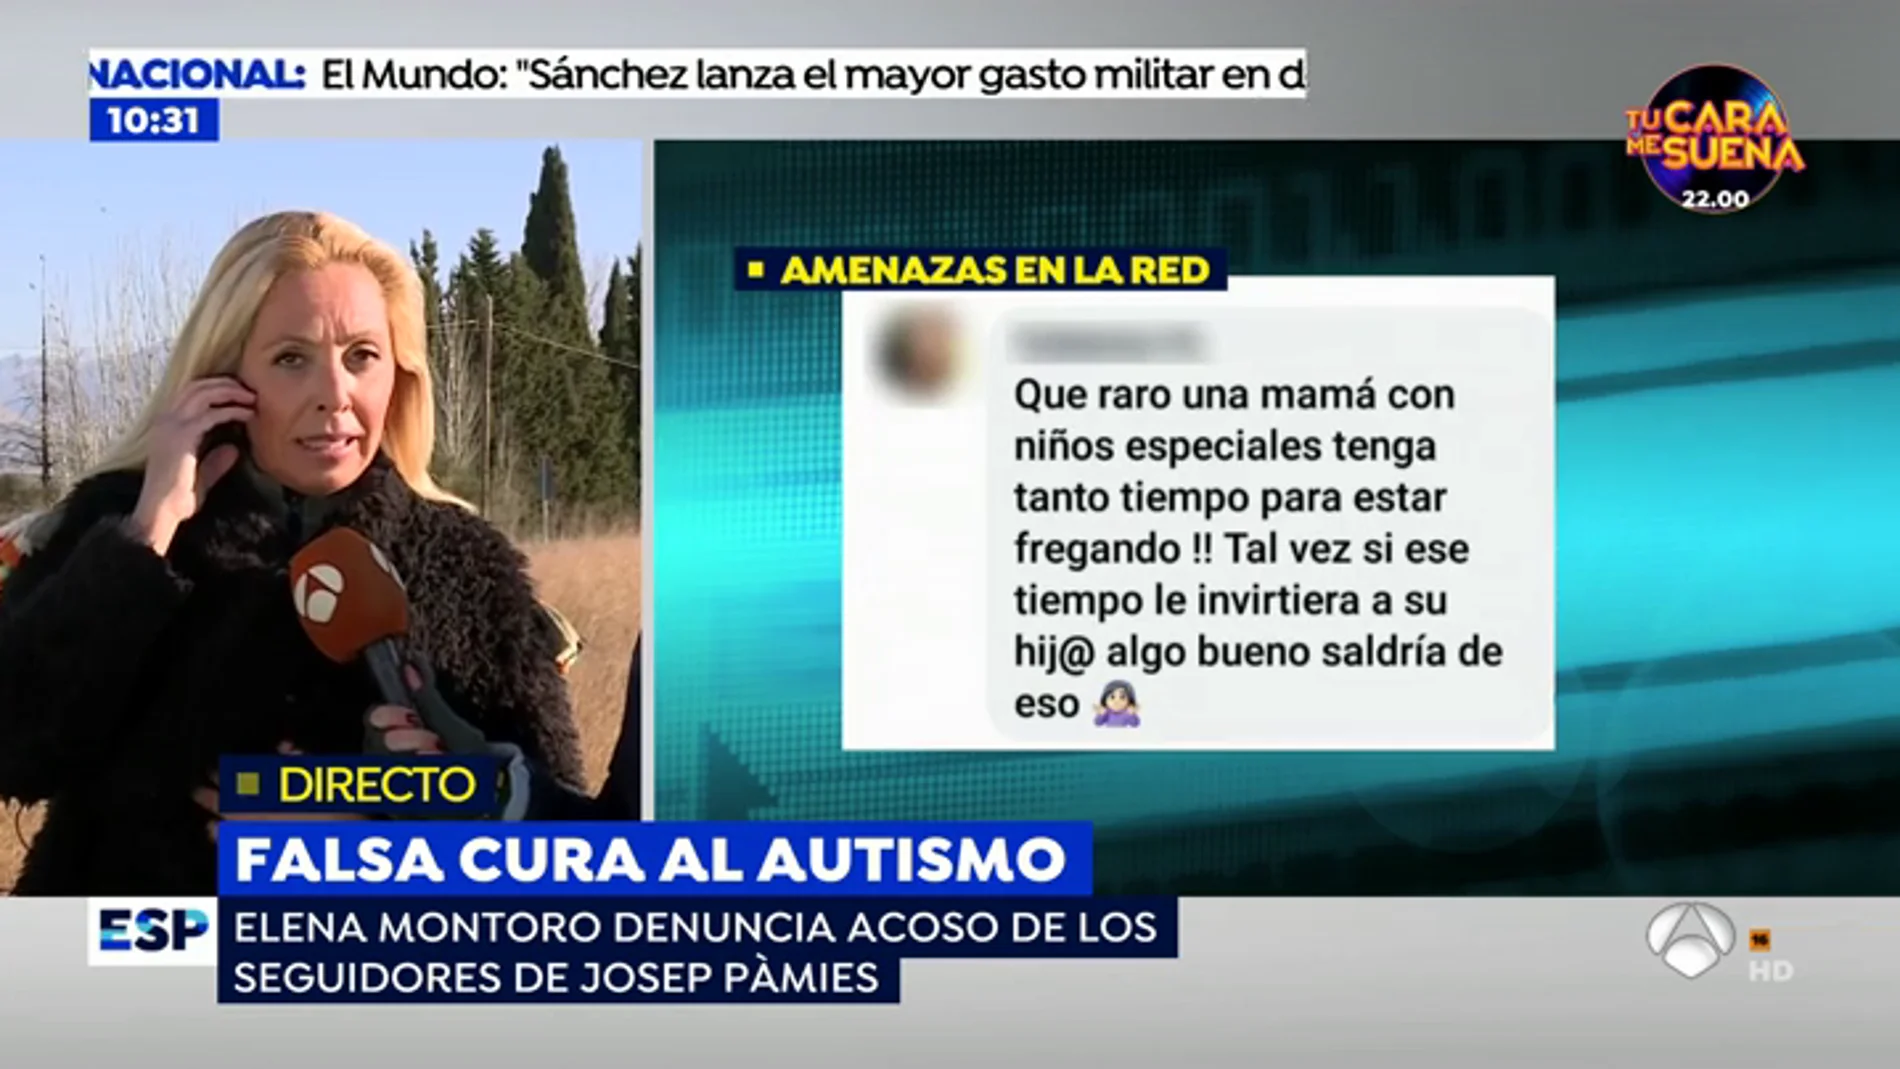 Los seguidores ultras del curandero Josep Pámies a una madre de un niño autista: "Lo mejor que te puede pasar es lo mismo que le pasó a la chica de La Manada" 